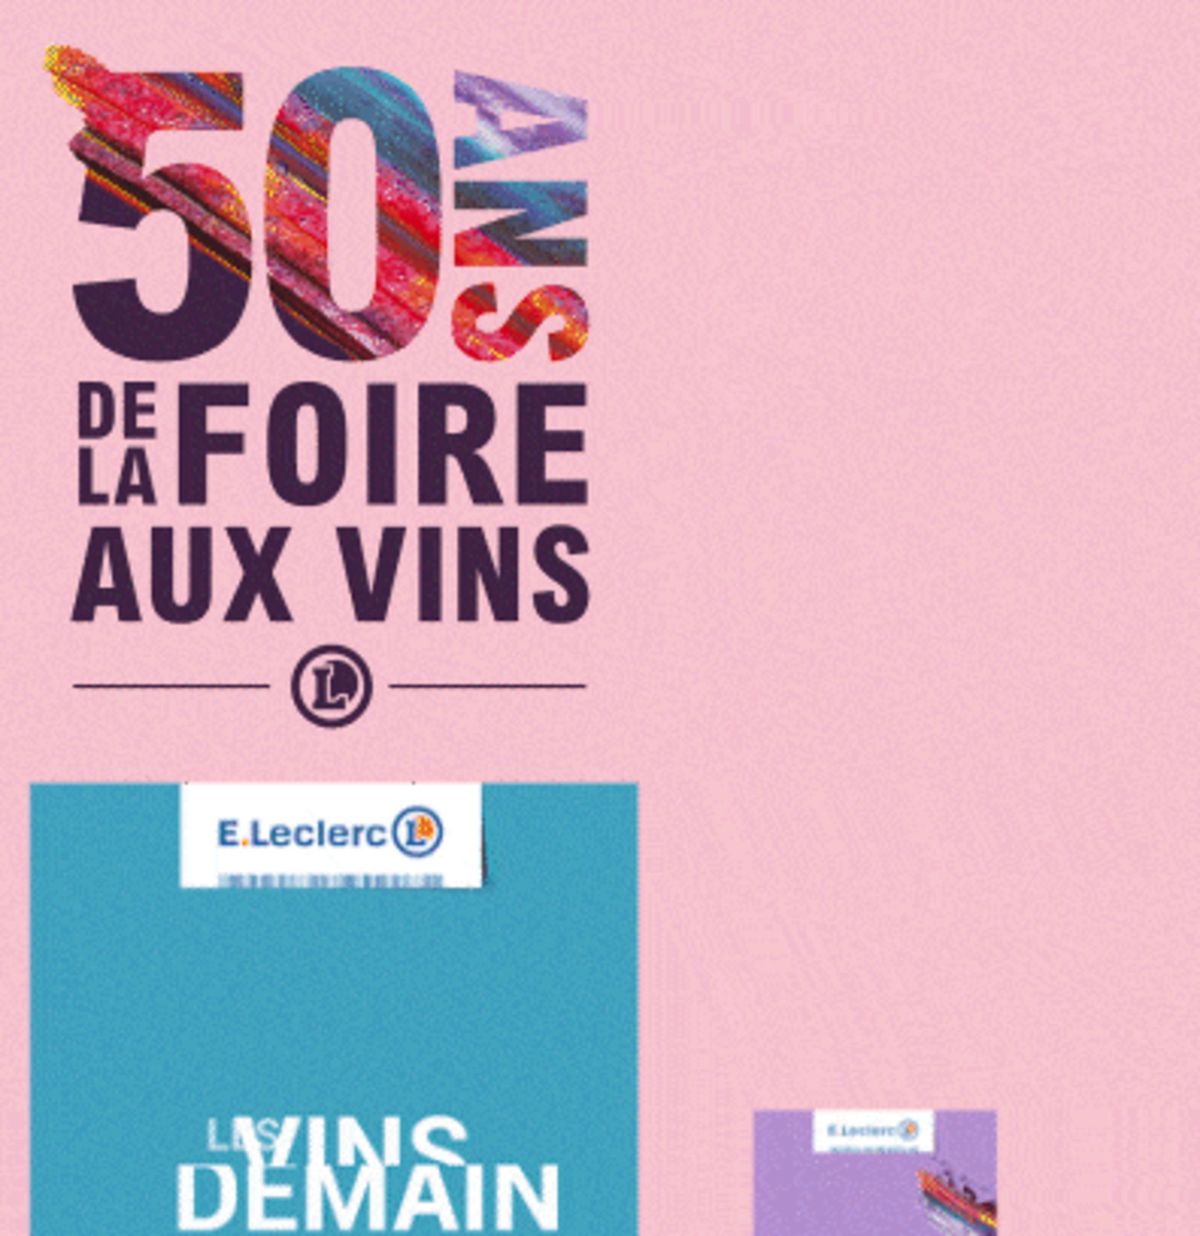 Catalogue Foire Aux Vins - Mixte, page 01145